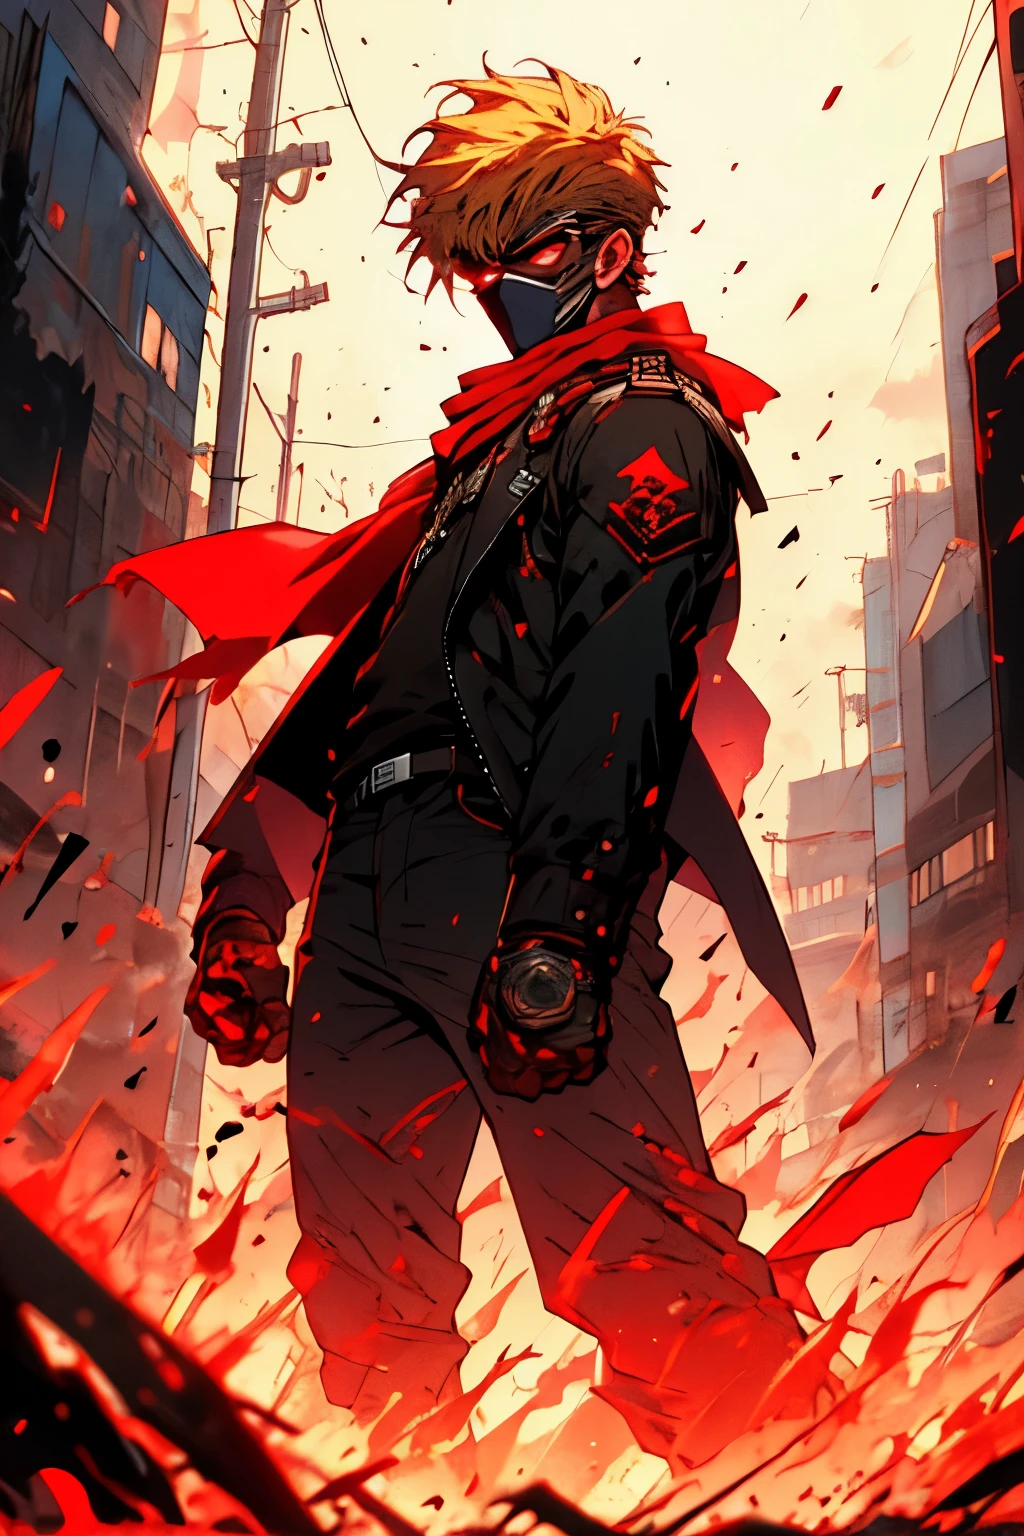 dünner großer Mann mit einem roten Kopftuch, kurzer blonder Buzzcut-Frisur und Pflaster auf der Wange in einer rot-schwarzen Jacke mit schwarzer Gesichtsmaske auf den Schultern und Blick nach oben in eine apokalyptische Stadt